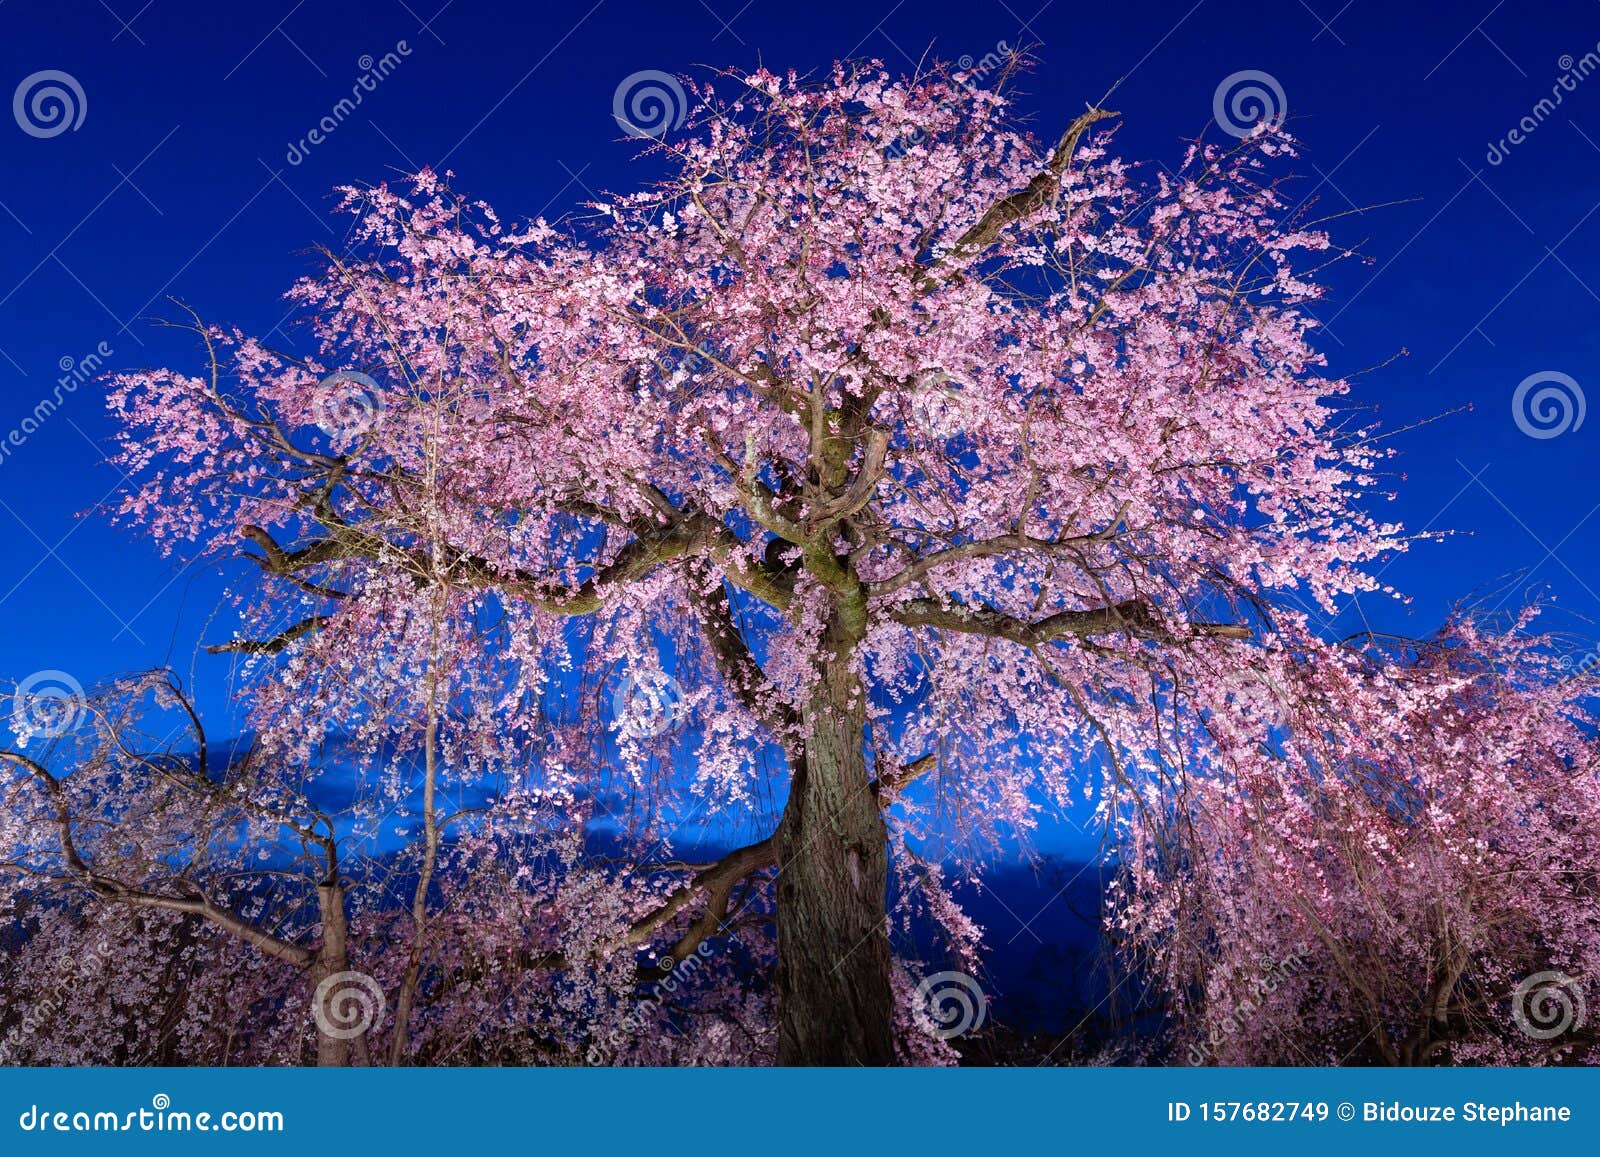 Oude Kersenboom Bloesem In Japan Stock Afbeelding - Image Of Bloesem,  Schoonheid: 157682749